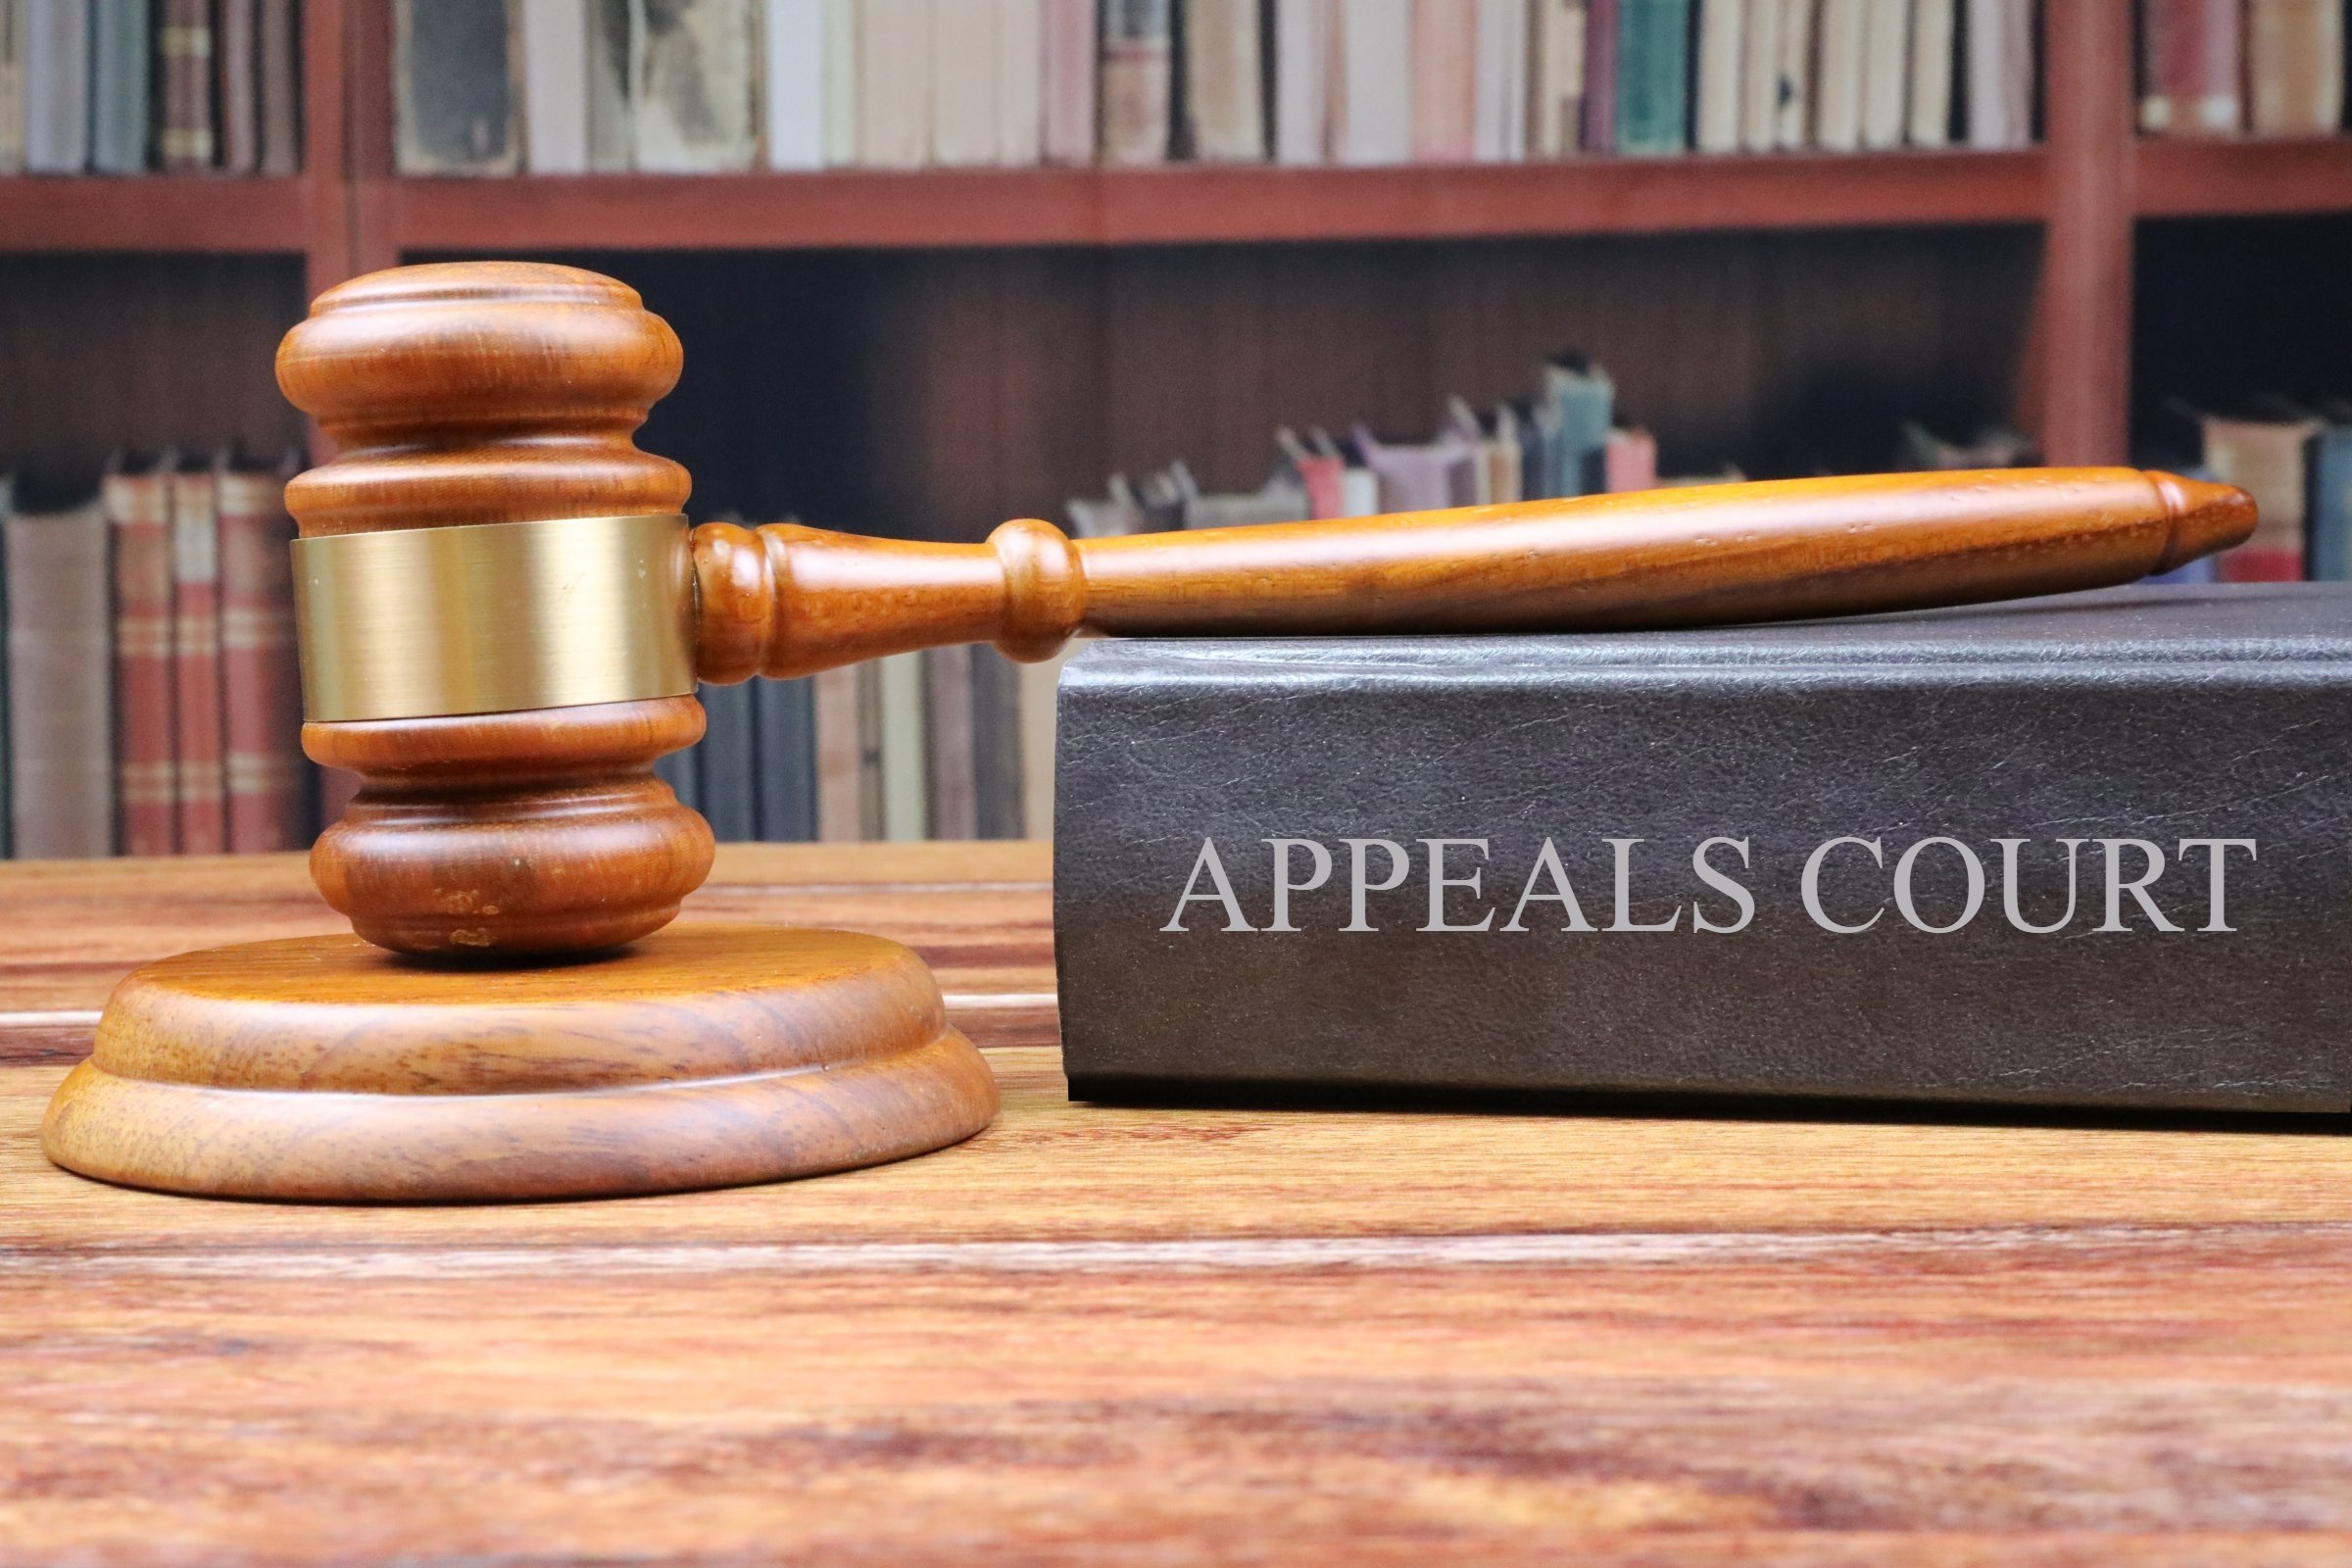 appeals court